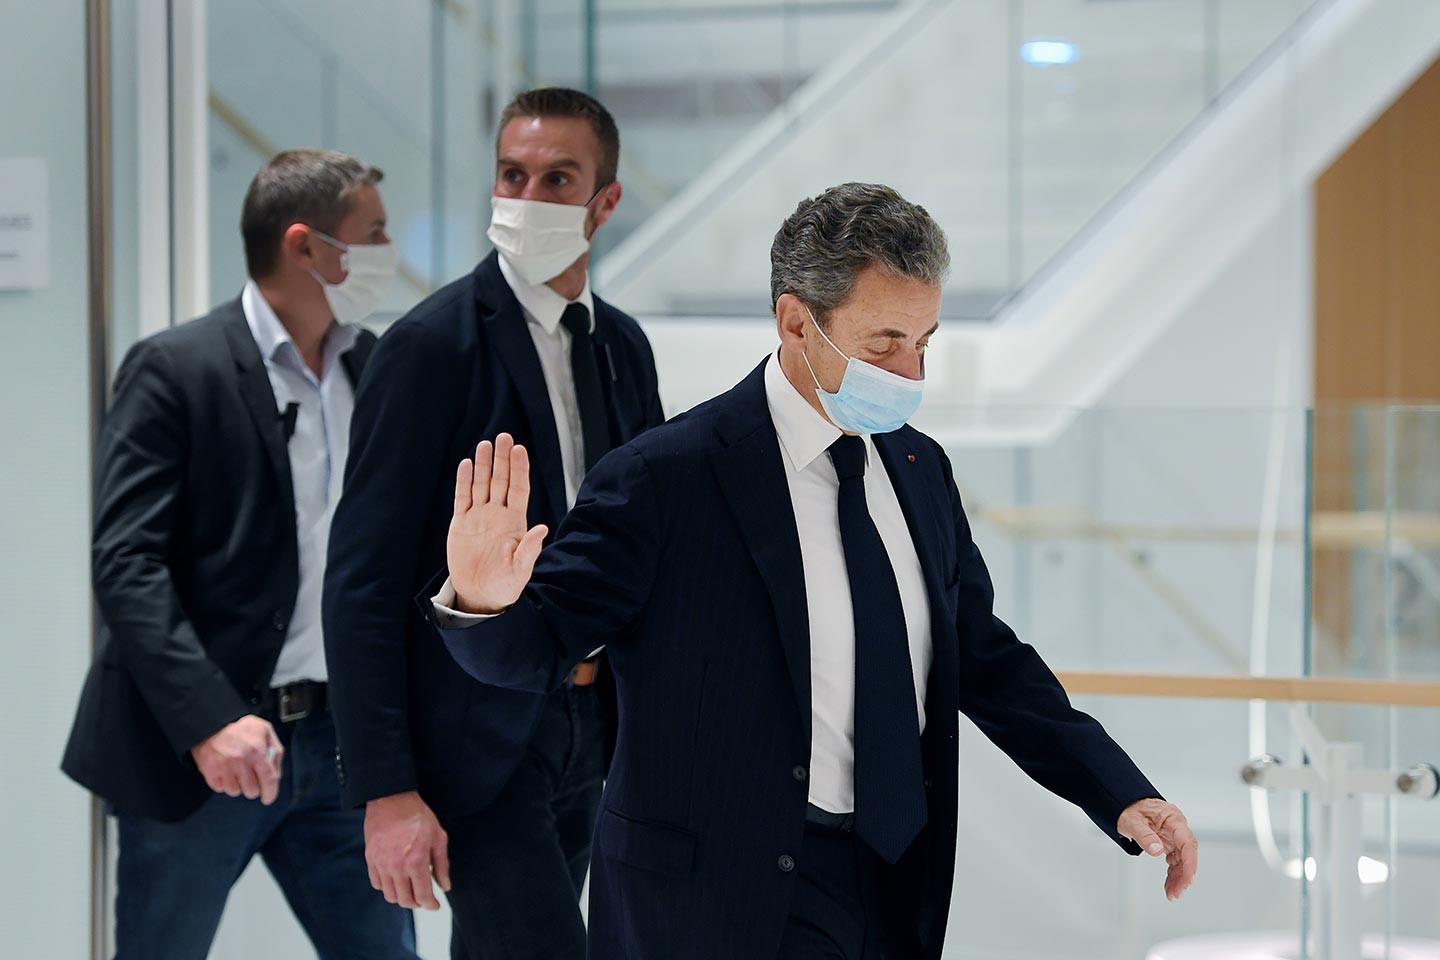 Le procureur financier met Sarkozy à la peine